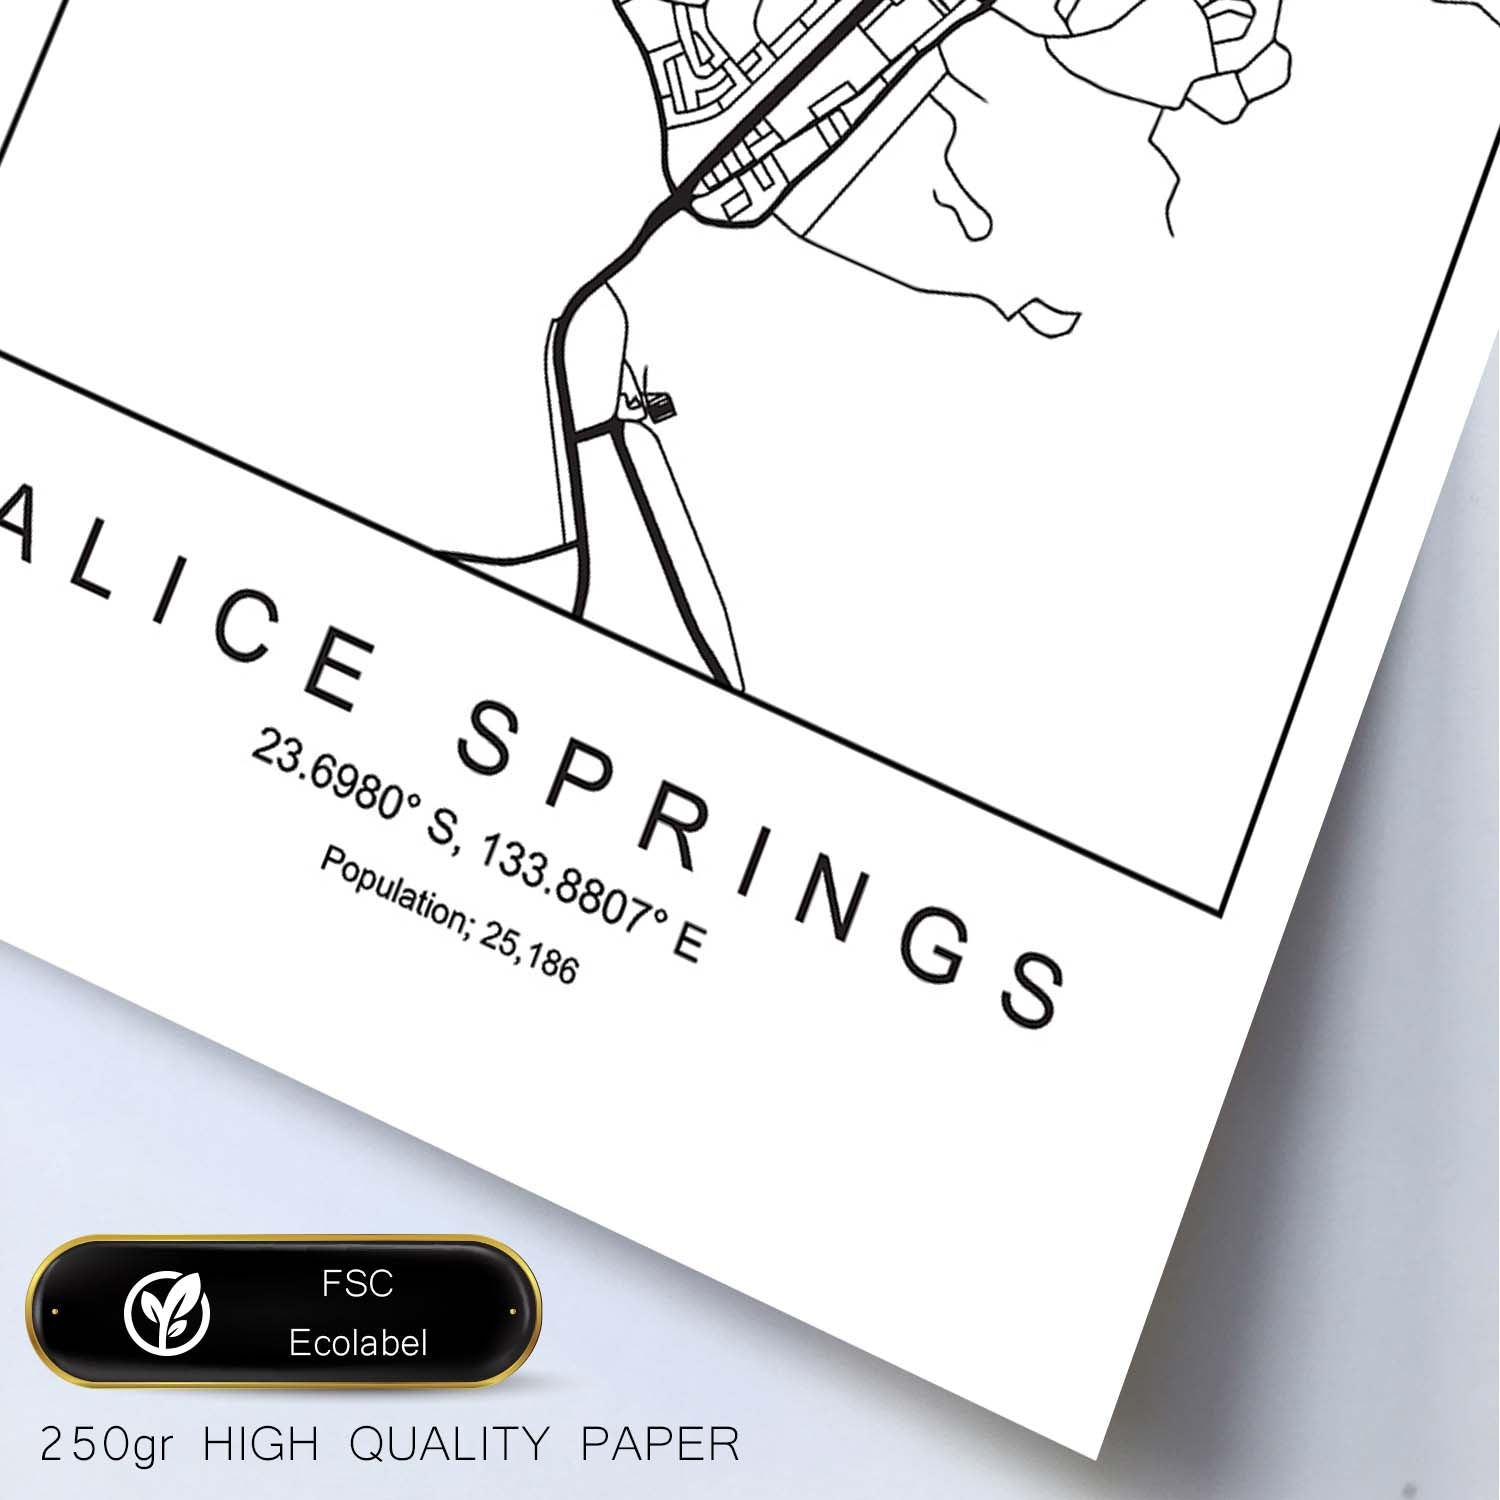 Lámina mapa de la ciudad Alice springs estilo nordico en blanco y negro.-Artwork-Nacnic-Nacnic Estudio SL